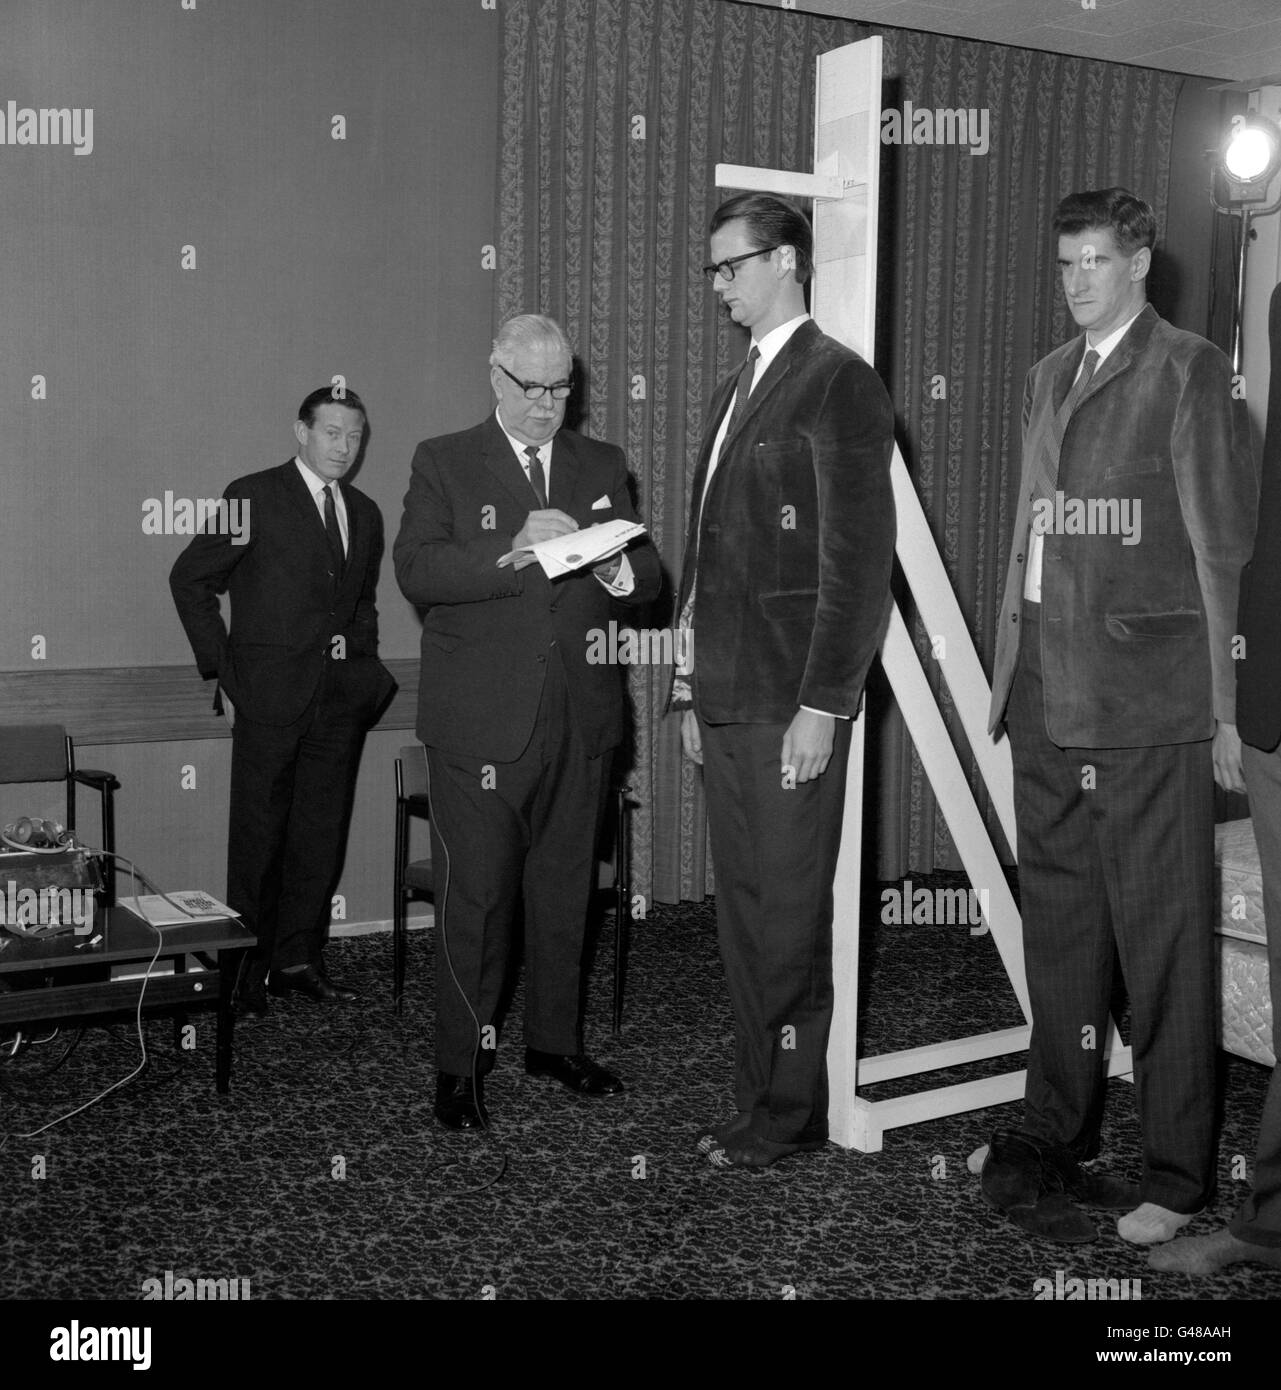 Robin Langford Evans, qui mesure six pieds dix pouces et demi de hauteur, est mesuré par le major Ronald Brittain à l'hôtel Londoner, Londres, lors de la plus haute compétition de l'homme en ville. Banque D'Images